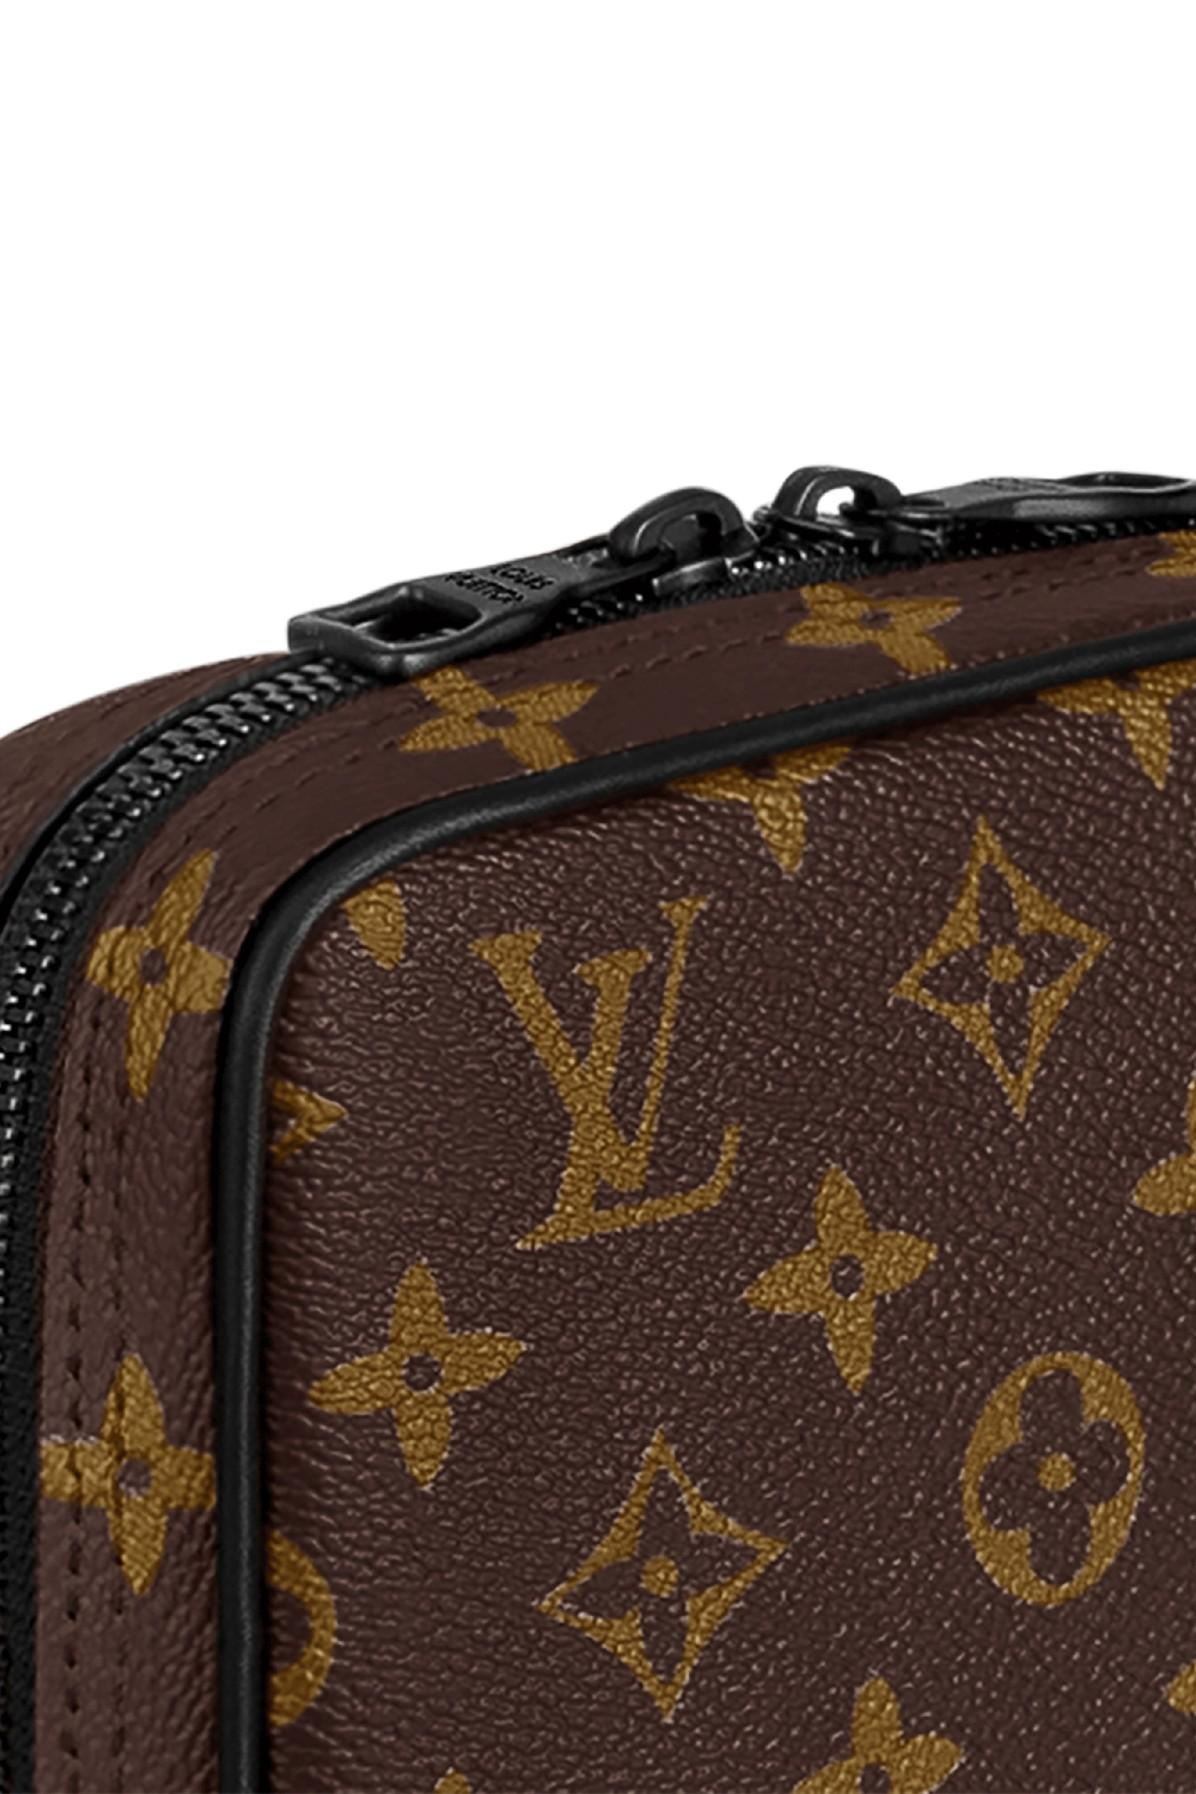 Utility Business Bag L''v Luxury Designer Men Shoulder Bag - China Crossbody  Bag and Travel Bag price